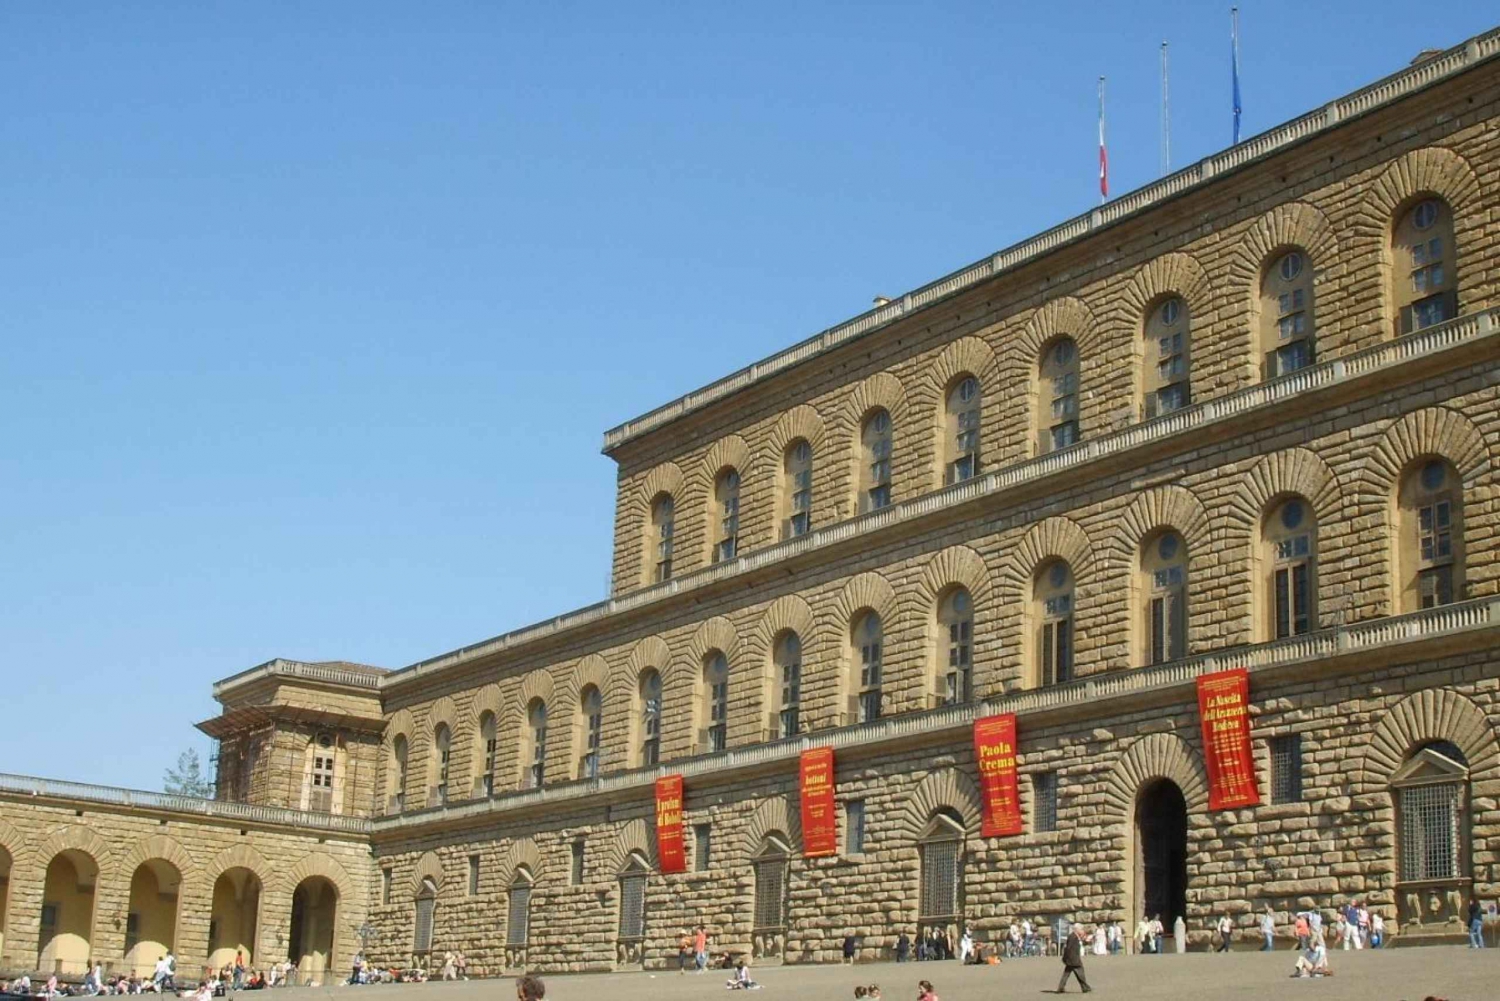 Firenze: Adgangsbillet til Pitti-paladset og guidet vandretur